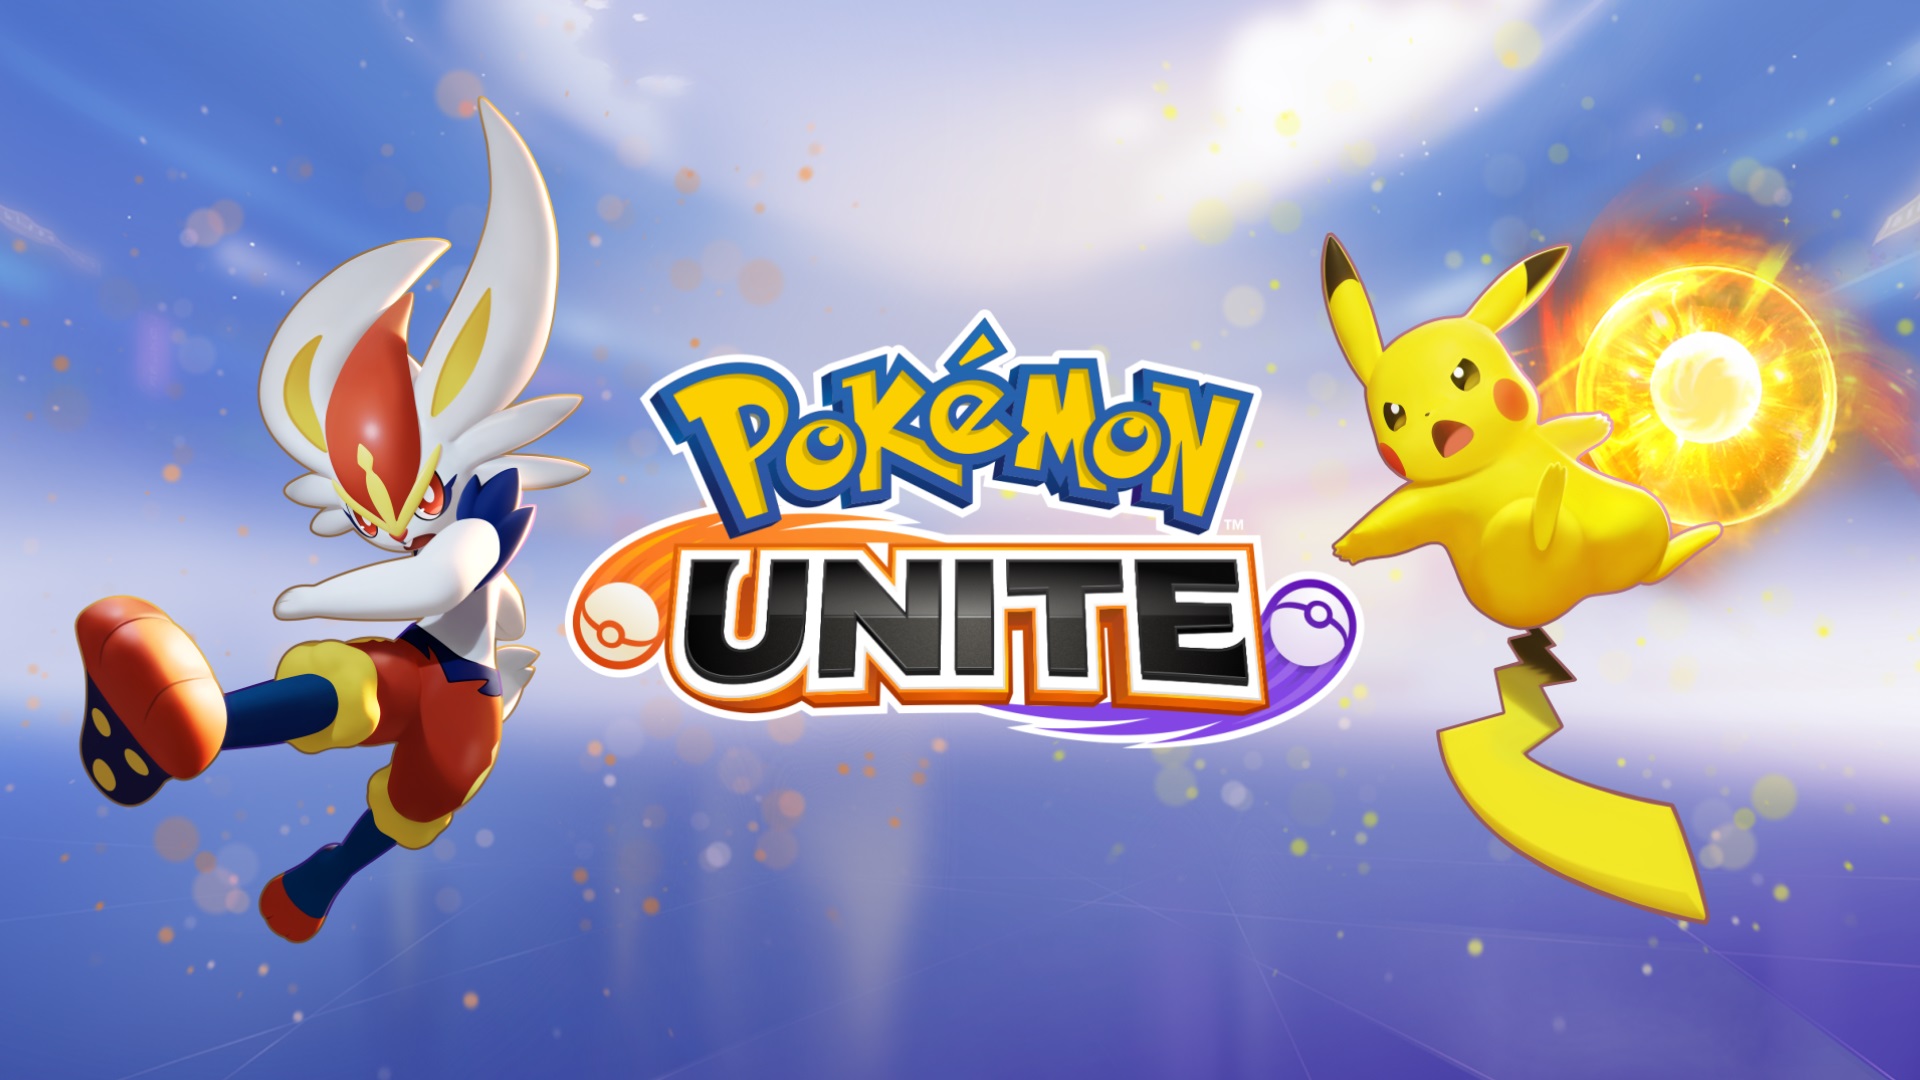 Pokemon Unite 07 15 21 1